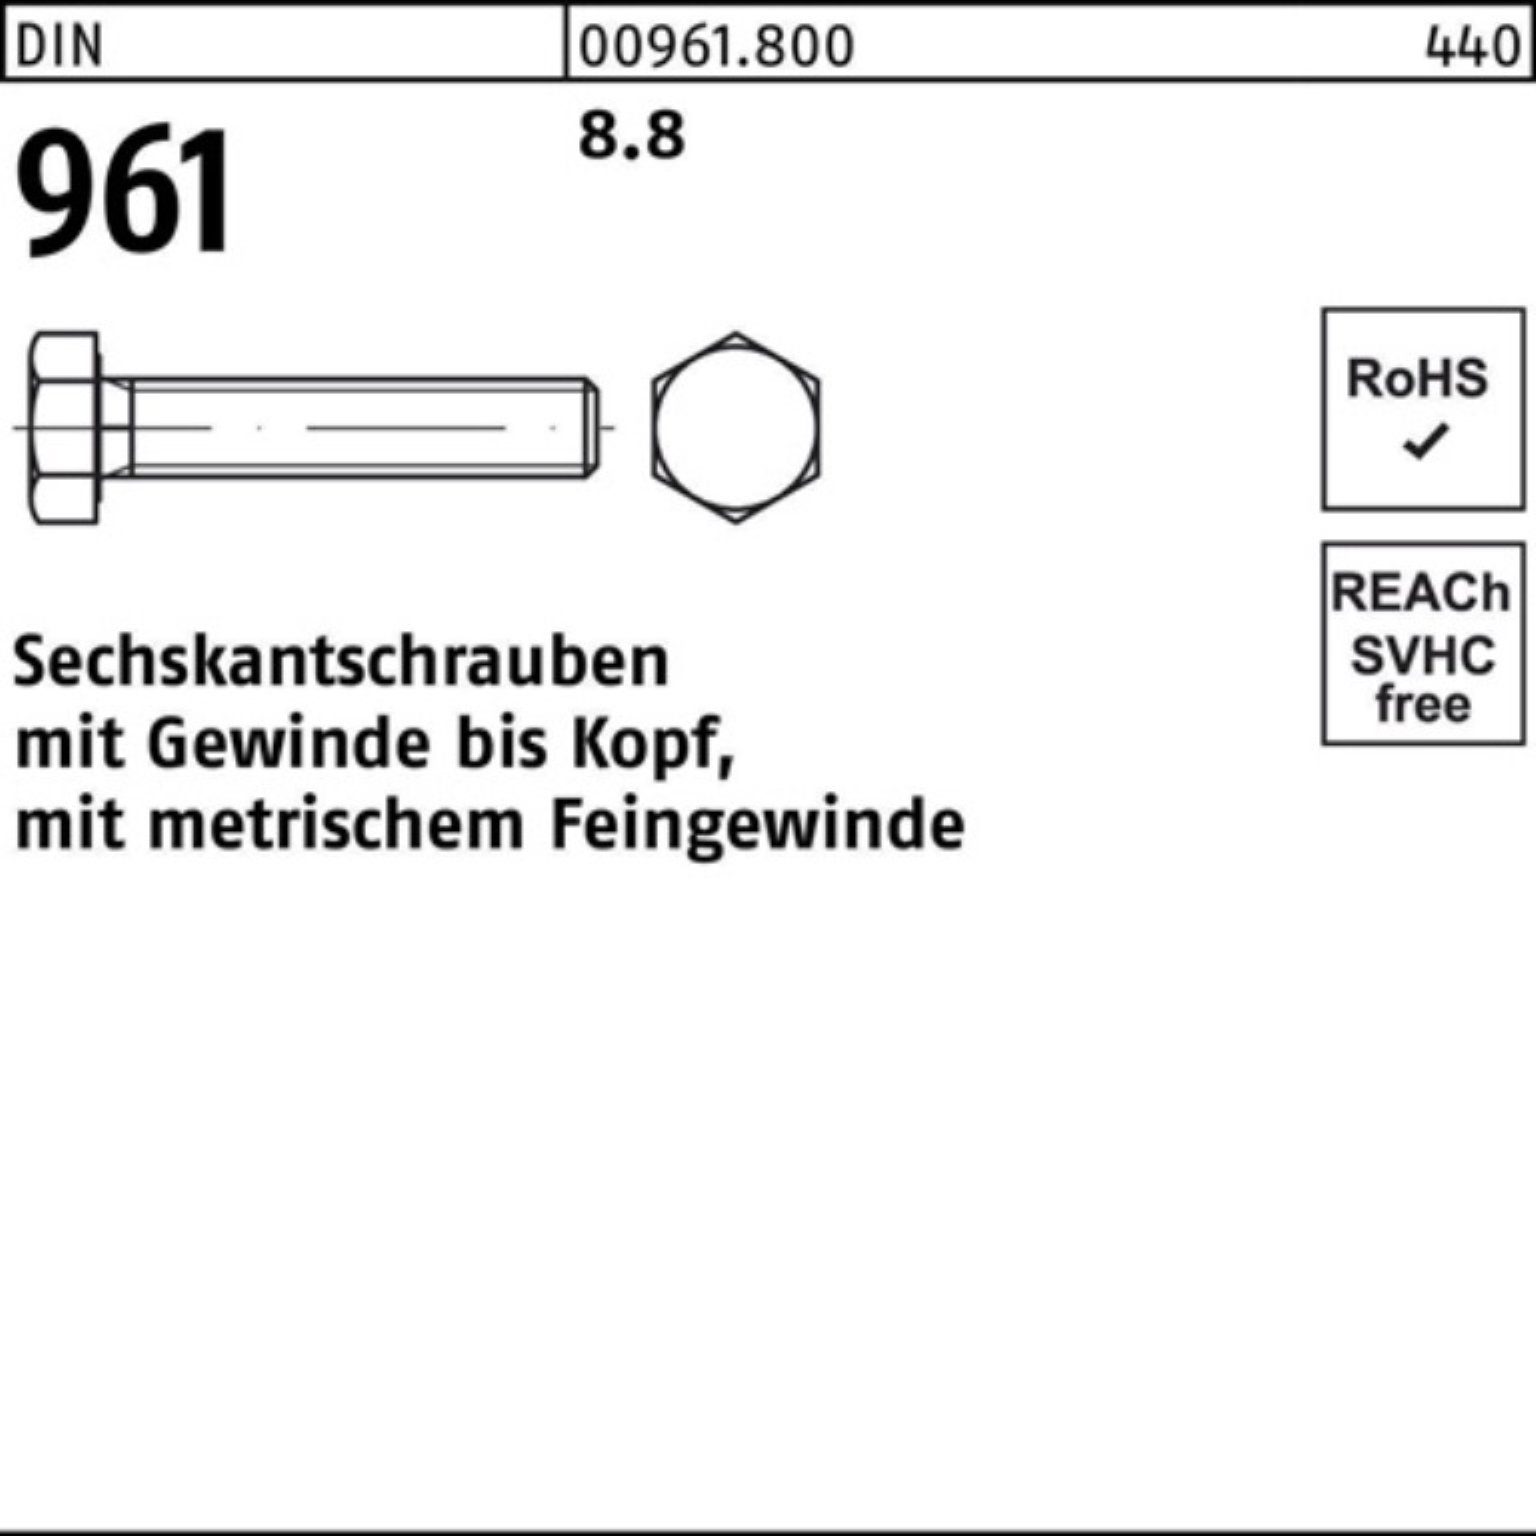 Sechskantschraube 8.8 961 9 DIN 1 Stück Reyher Sechskantschraube M24x1,5x130 Pack VG DIN 100er